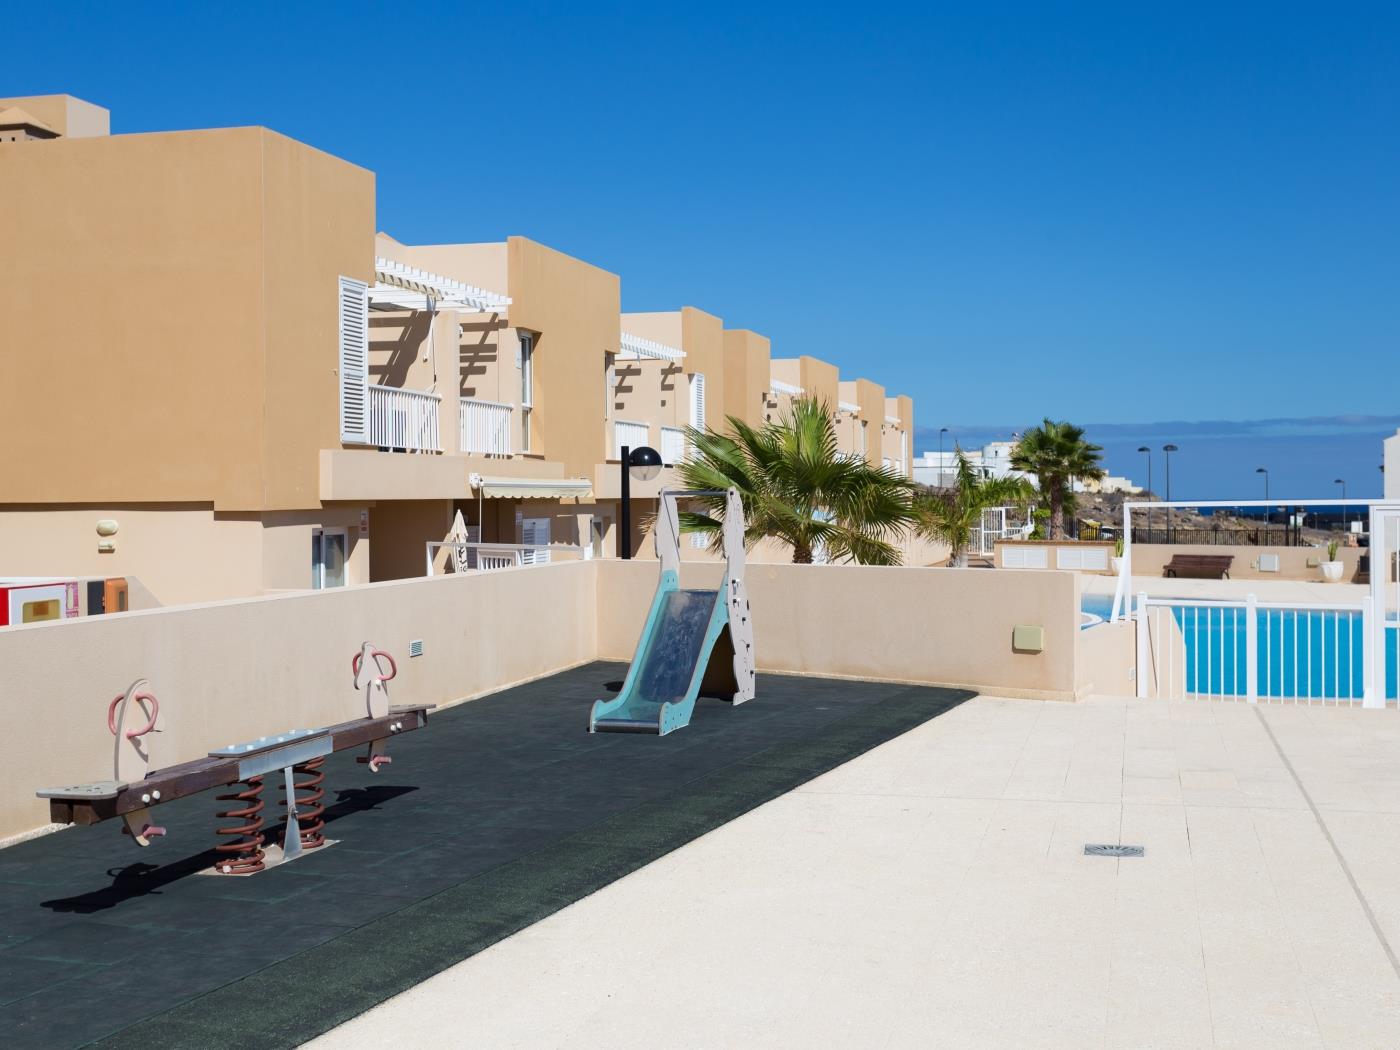 Nice terrace apartment, shared pool - PORÍS 2 in Porís de Abona